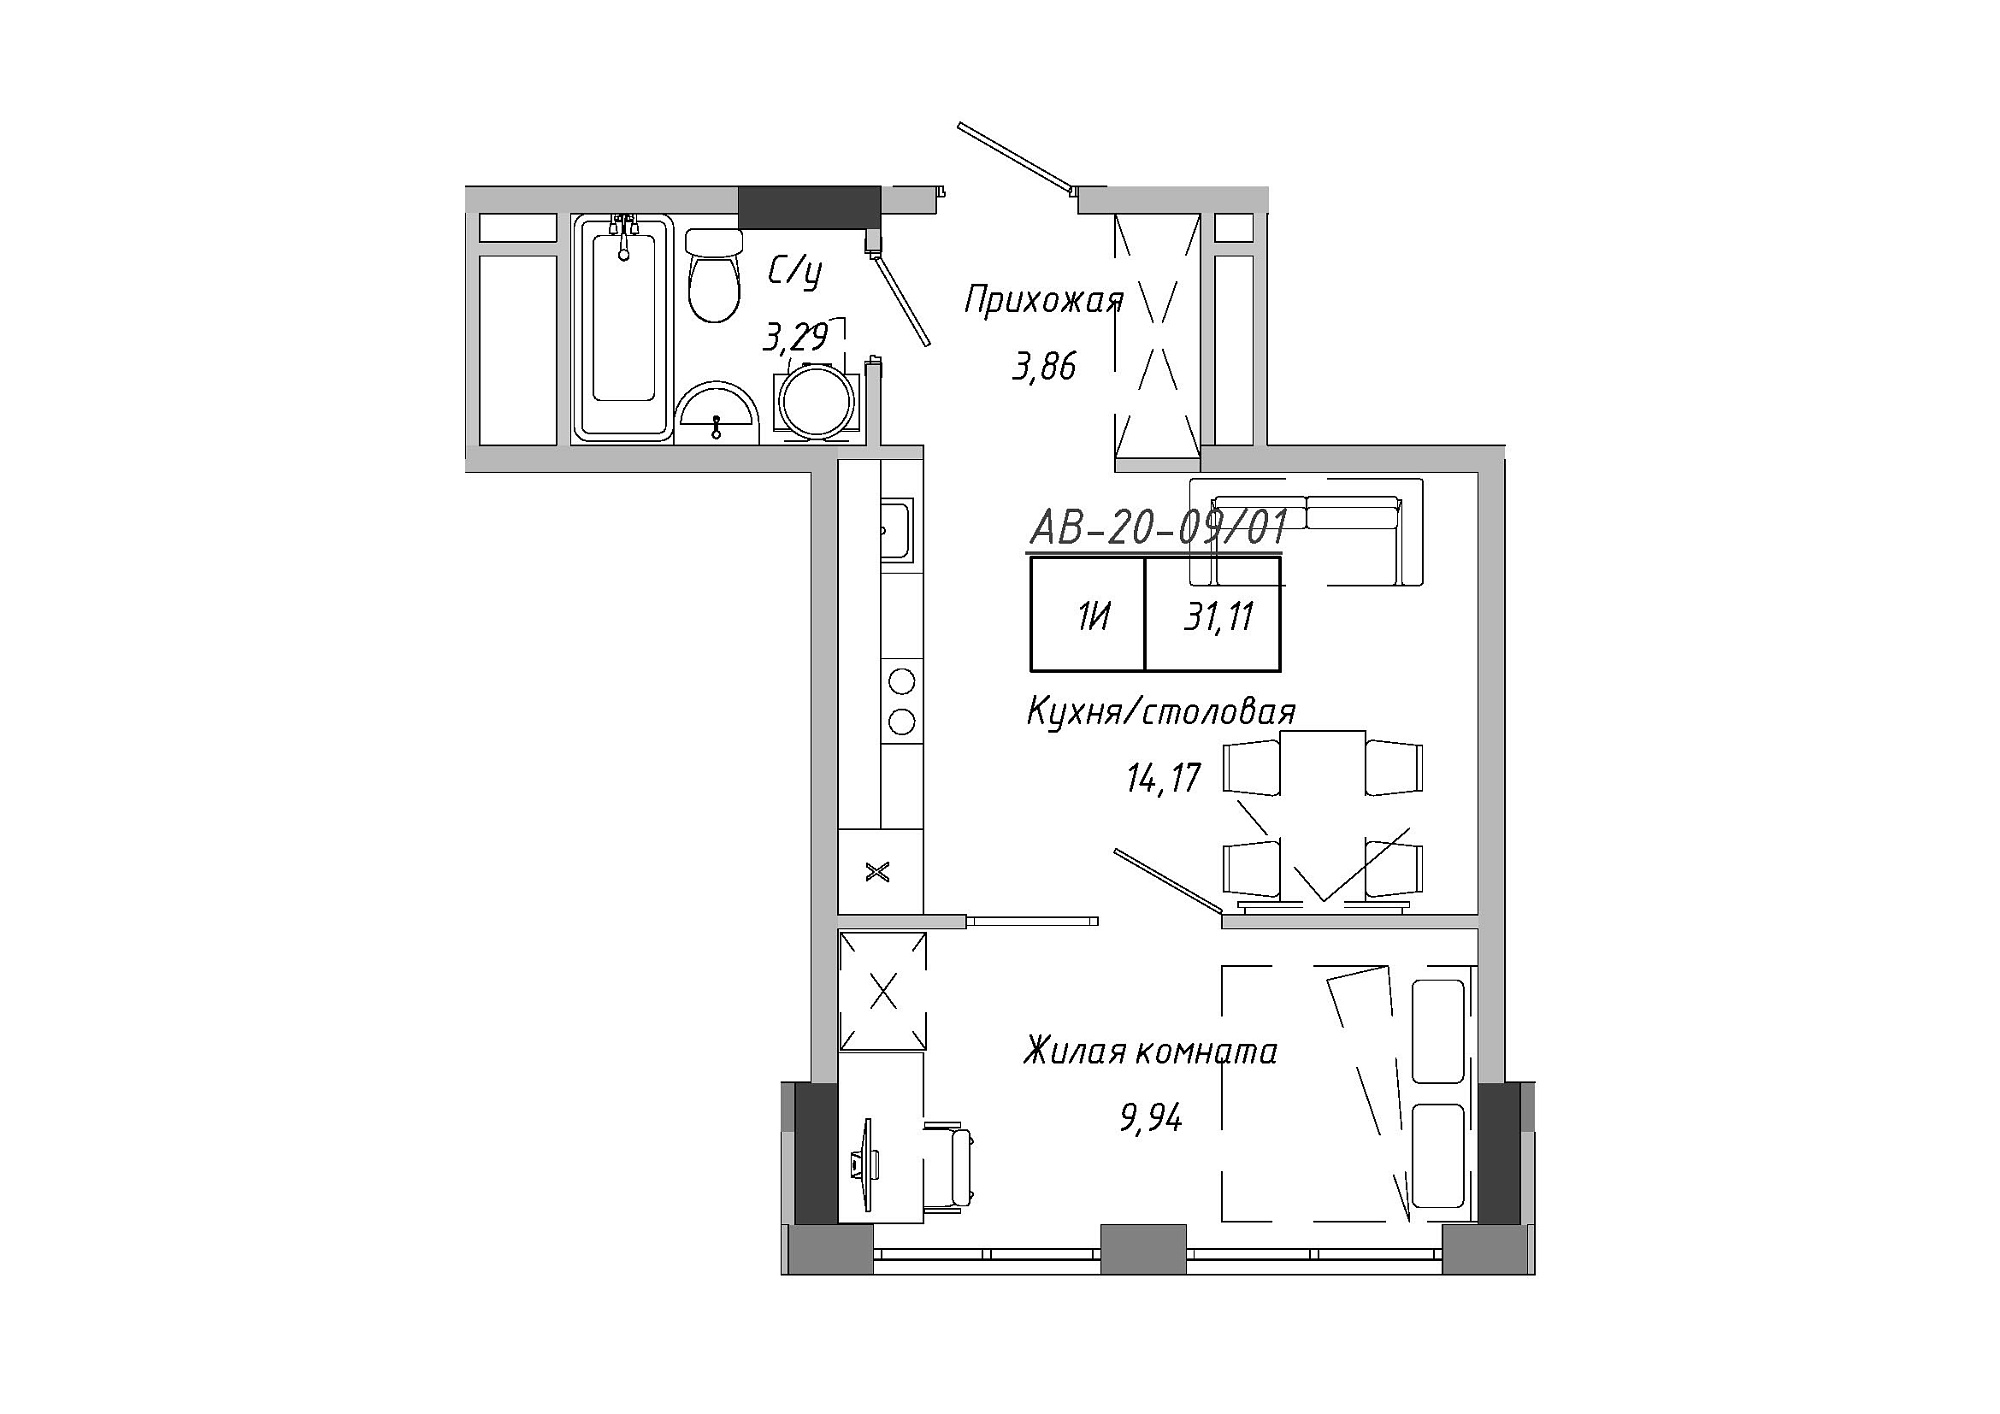 Планировка 1-к квартира площей 30.28м2, AB-20-09/00001.